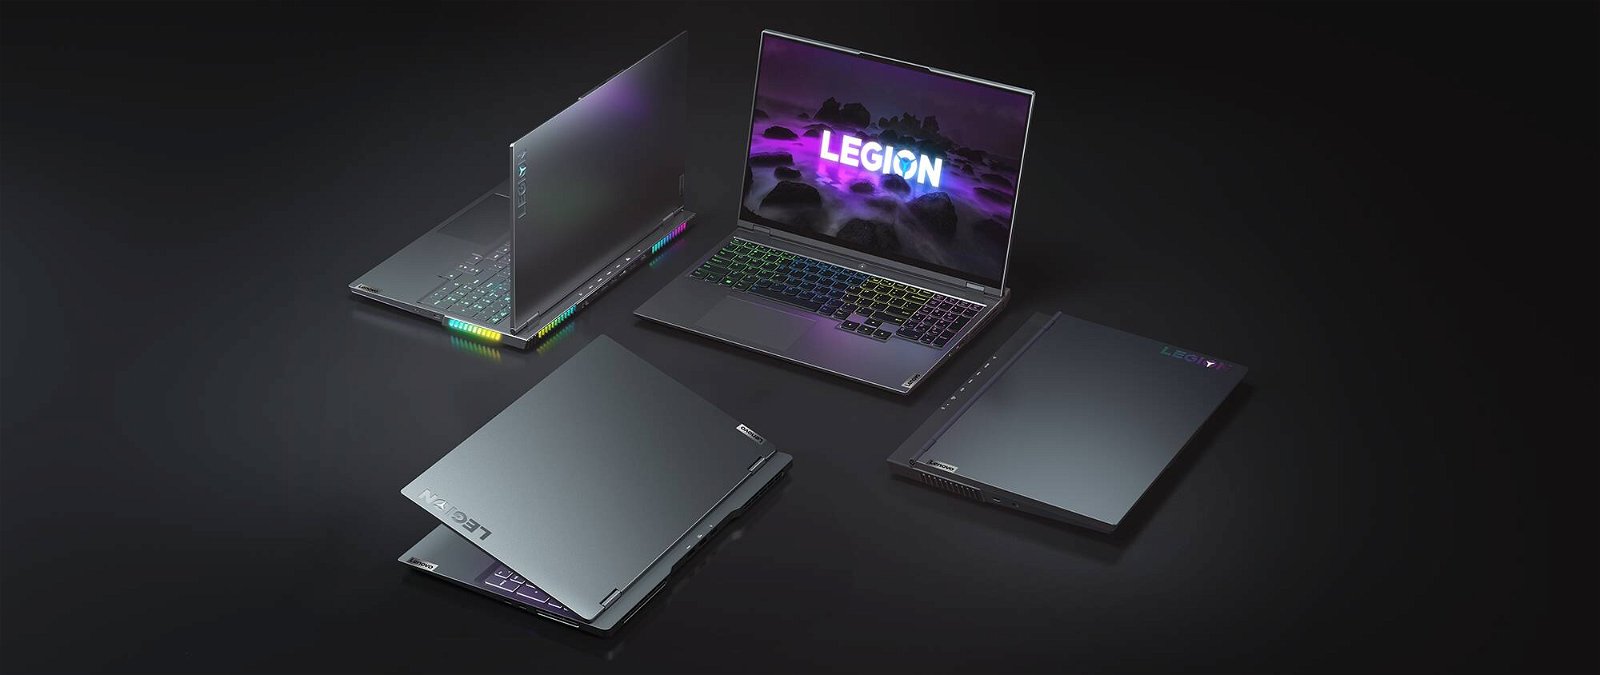 Immagine di Lenovo Legion, laptop da gaming con AMD Ryzen e Nvidia RTX di nuova generazione